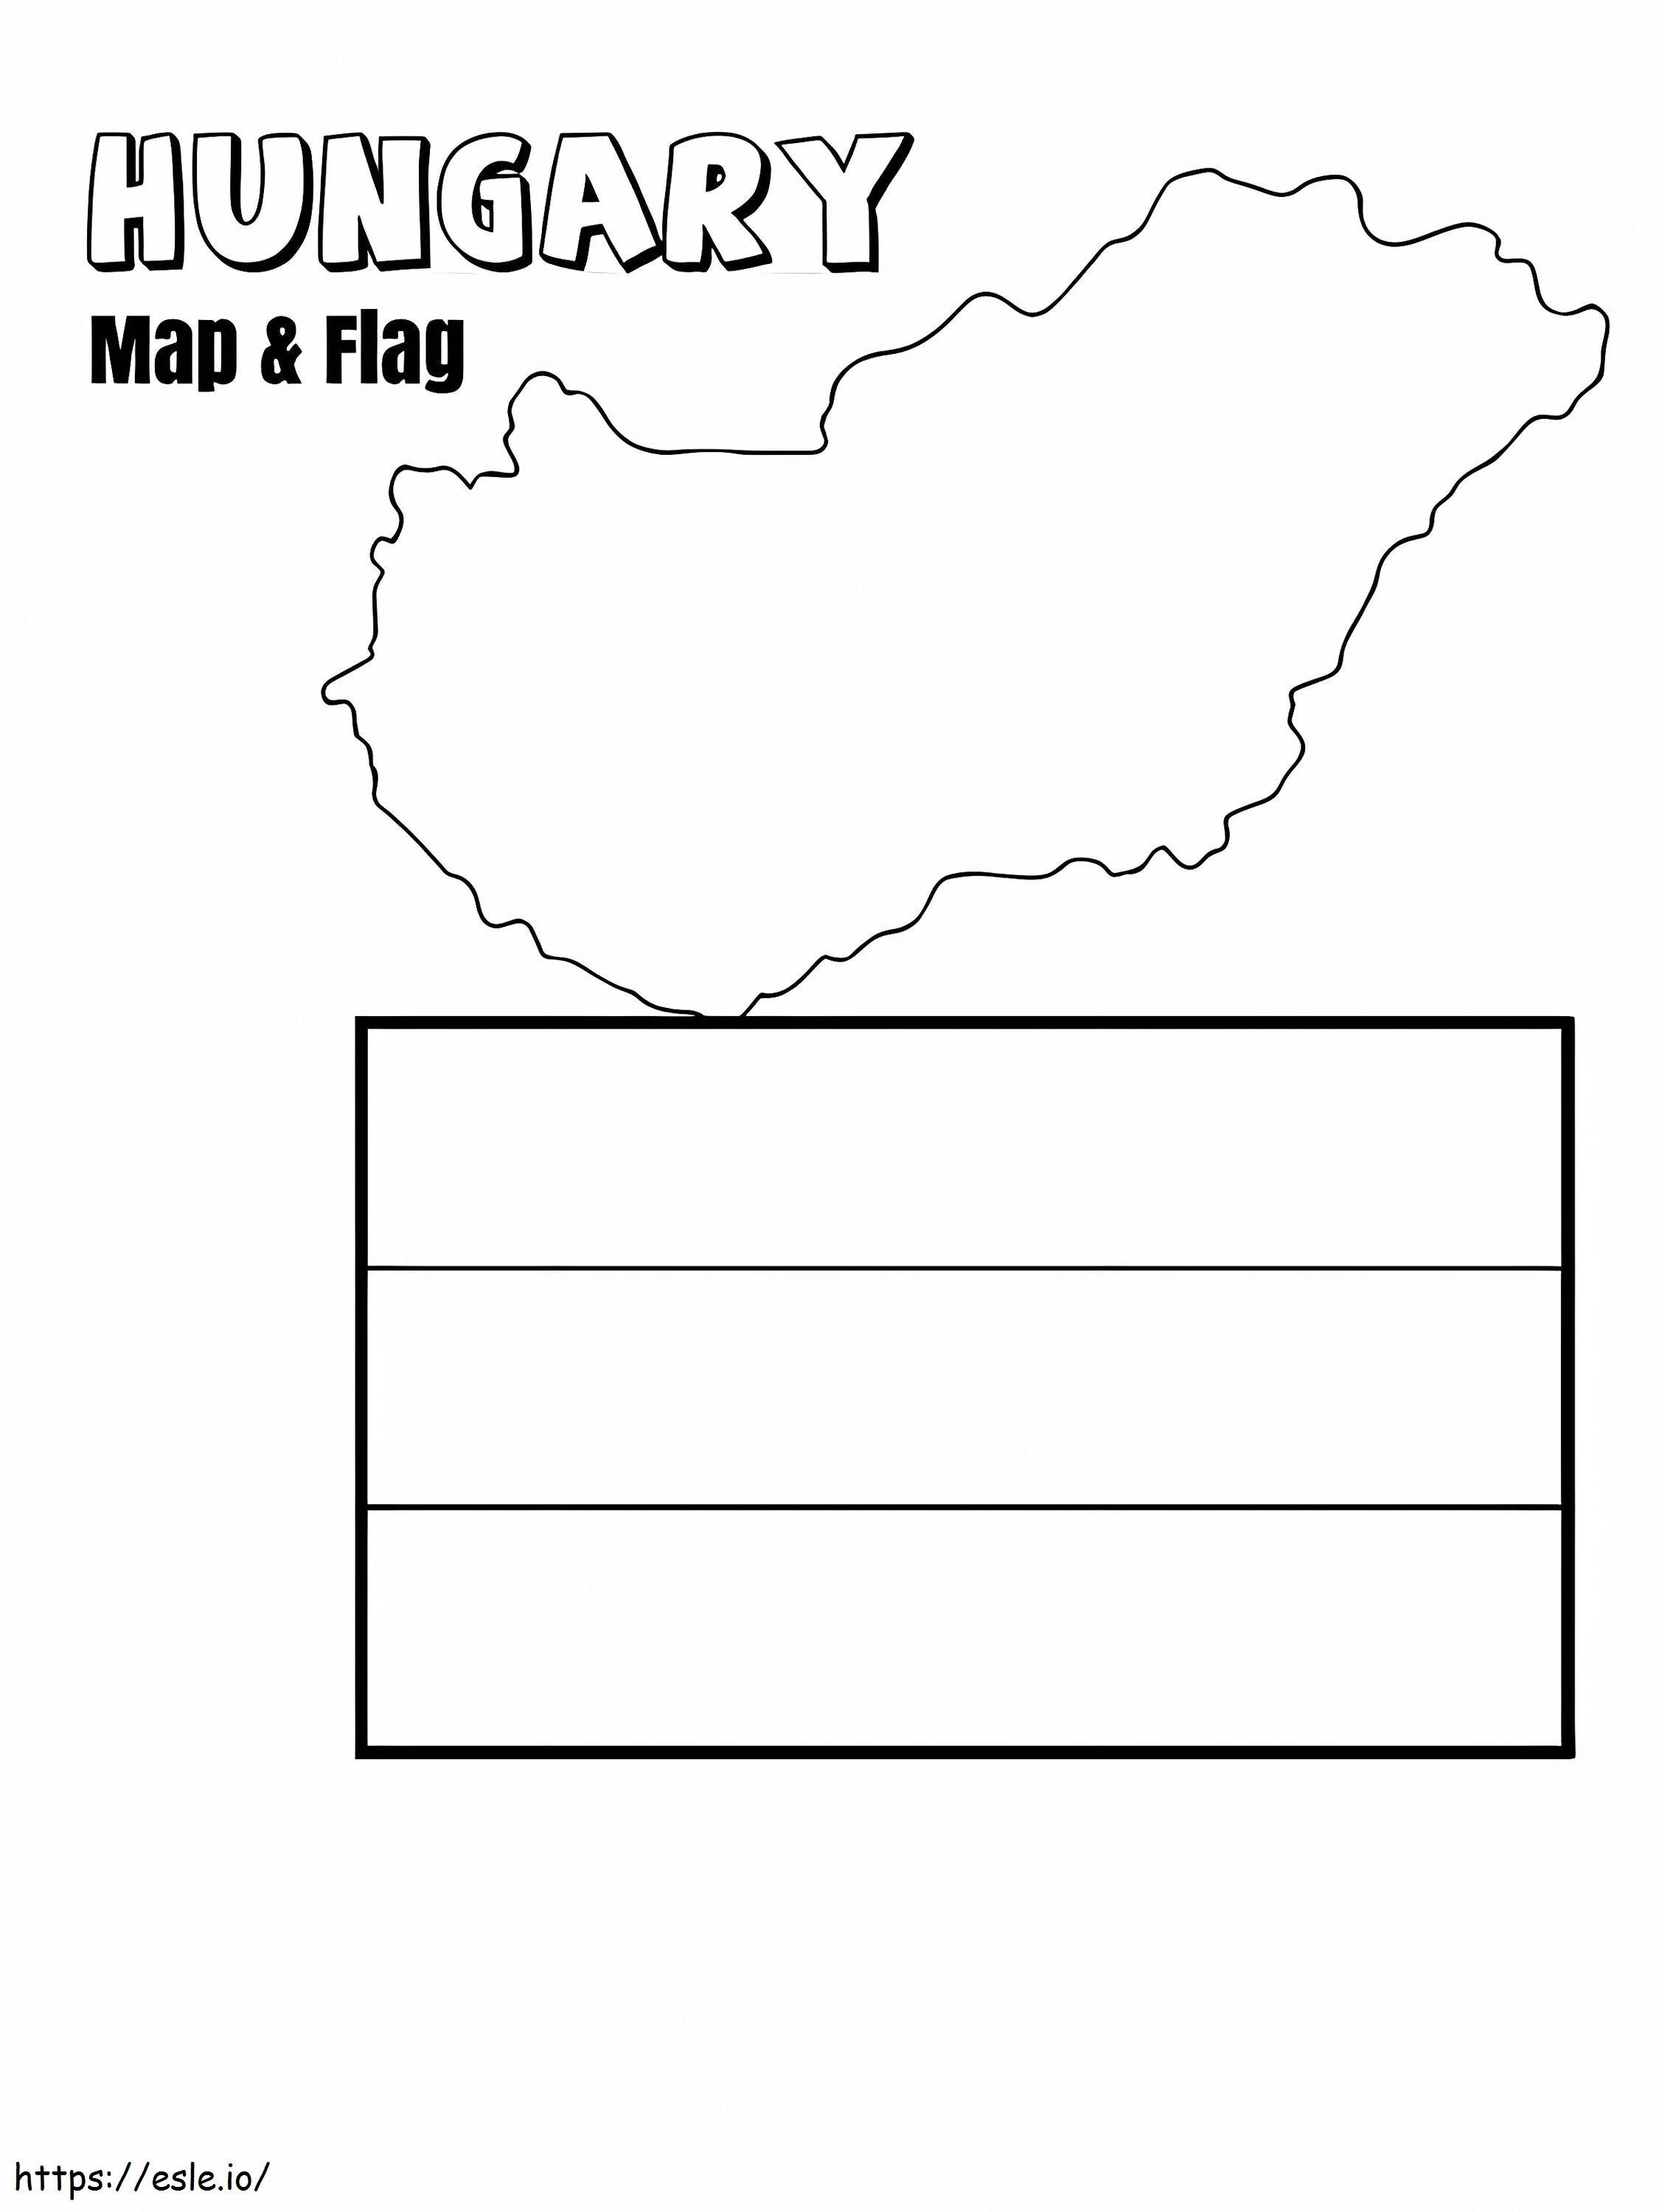 Mapa y bandera de Hungría para colorear